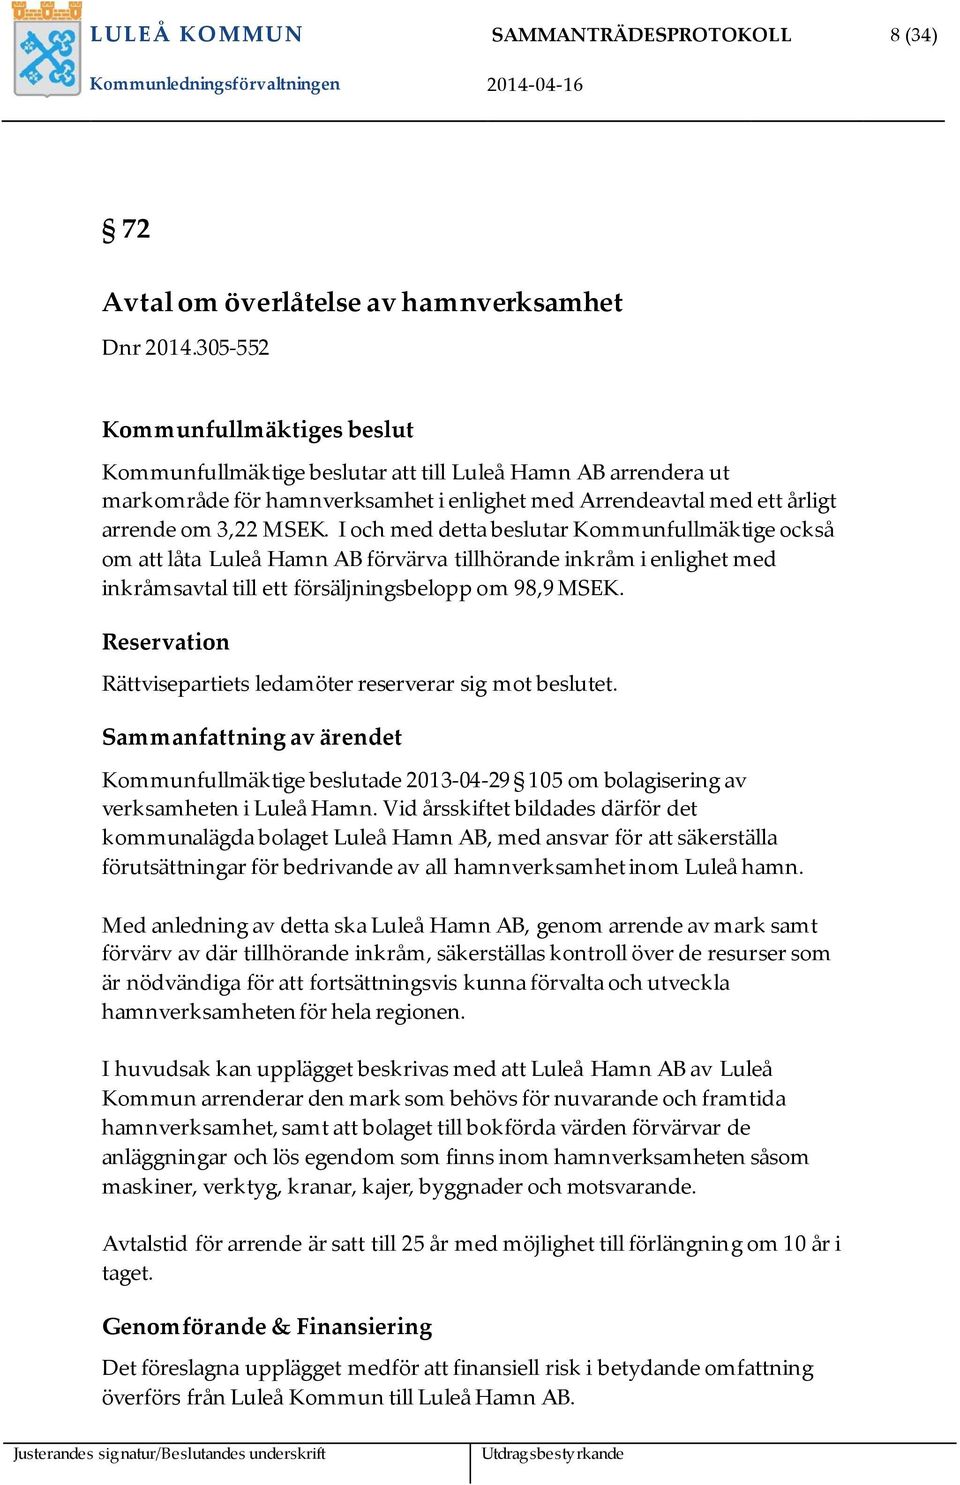 I och med detta beslutar Kommunfullmäktige också om att låta Luleå Hamn AB förvärva tillhörande inkråm i enlighet med inkråmsavtal till ett försäljningsbelopp om 98,9 MSEK.